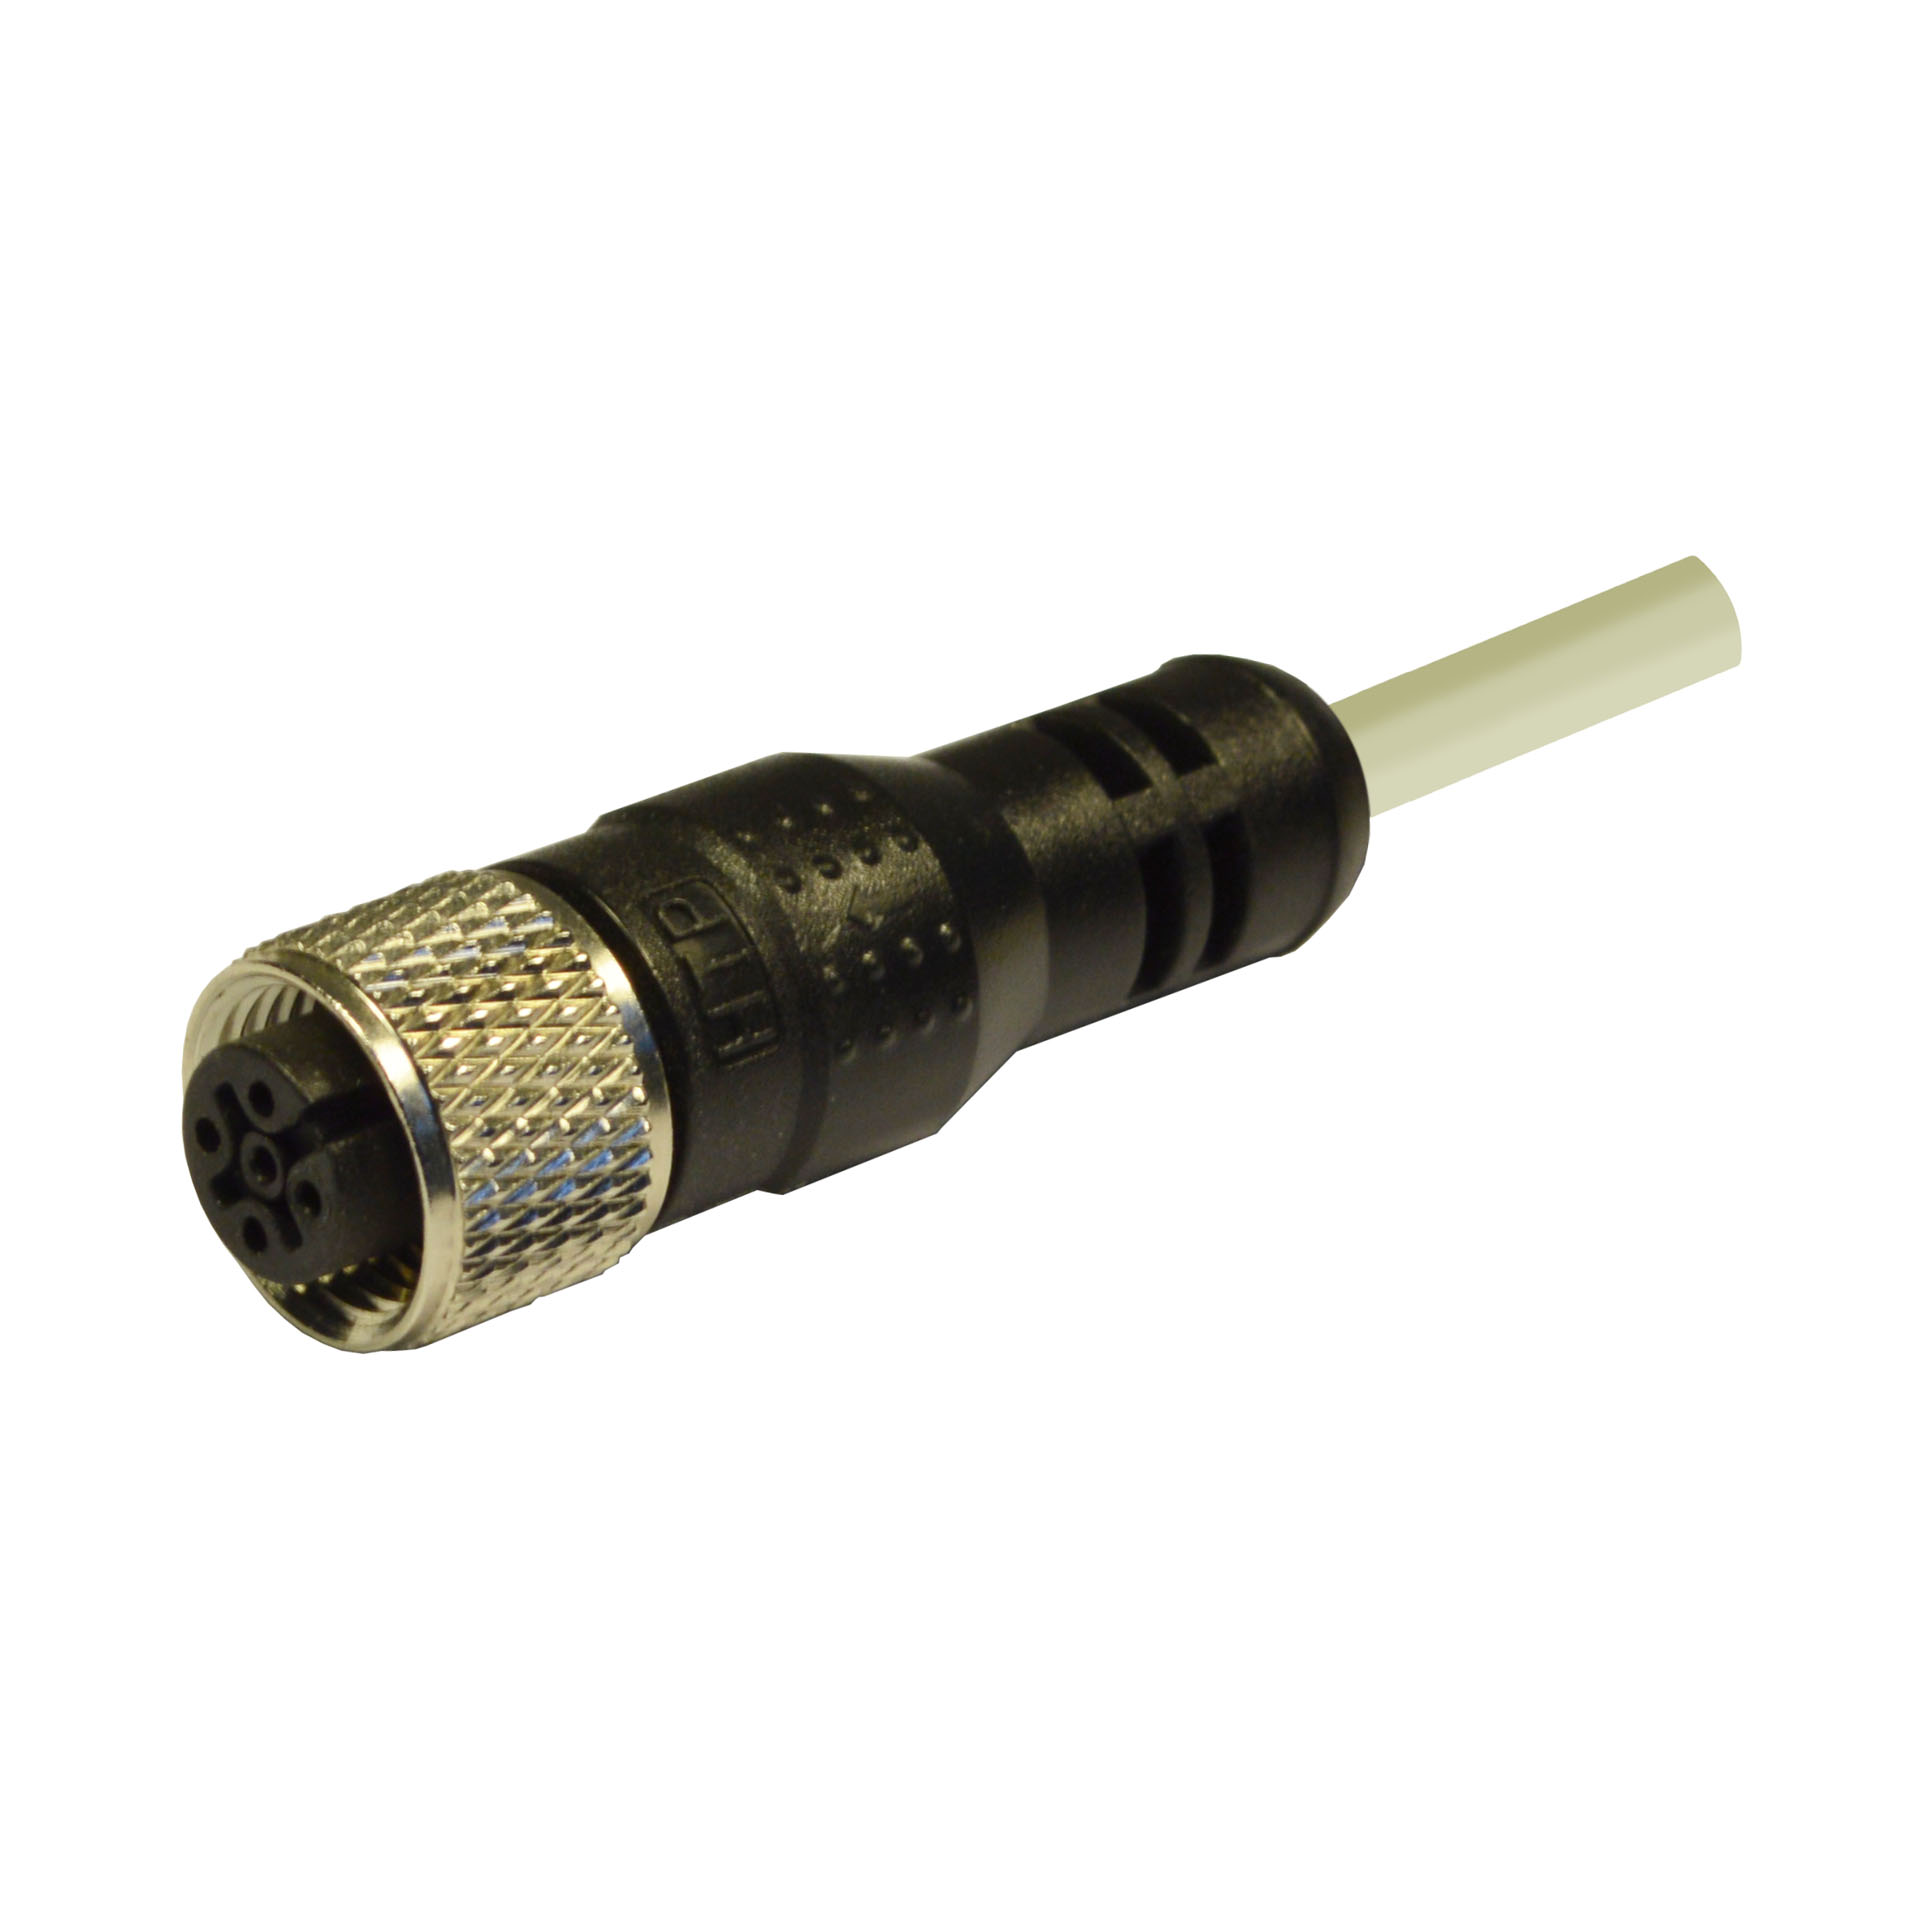 M12 fem conn - 180° - 3pol - 10 m . Cable type PVC/PVC 3x0,25 col.grey